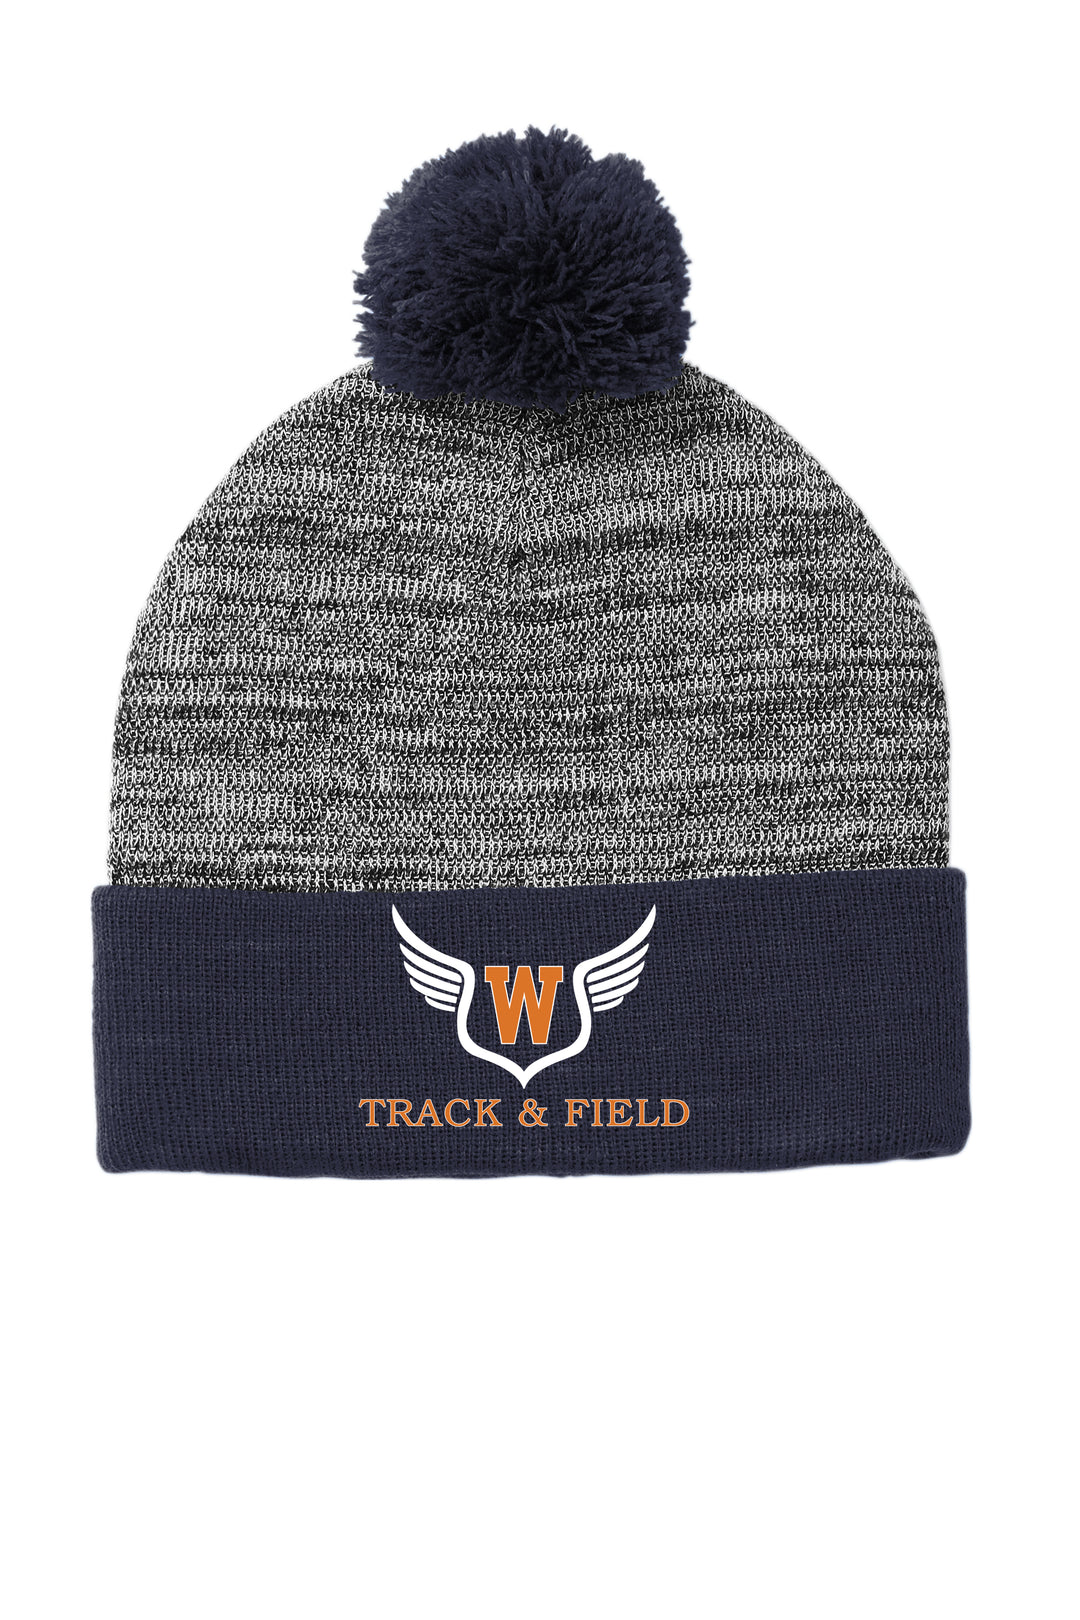 Walpole Track & Field Pompom Beanie Hat (STC41)